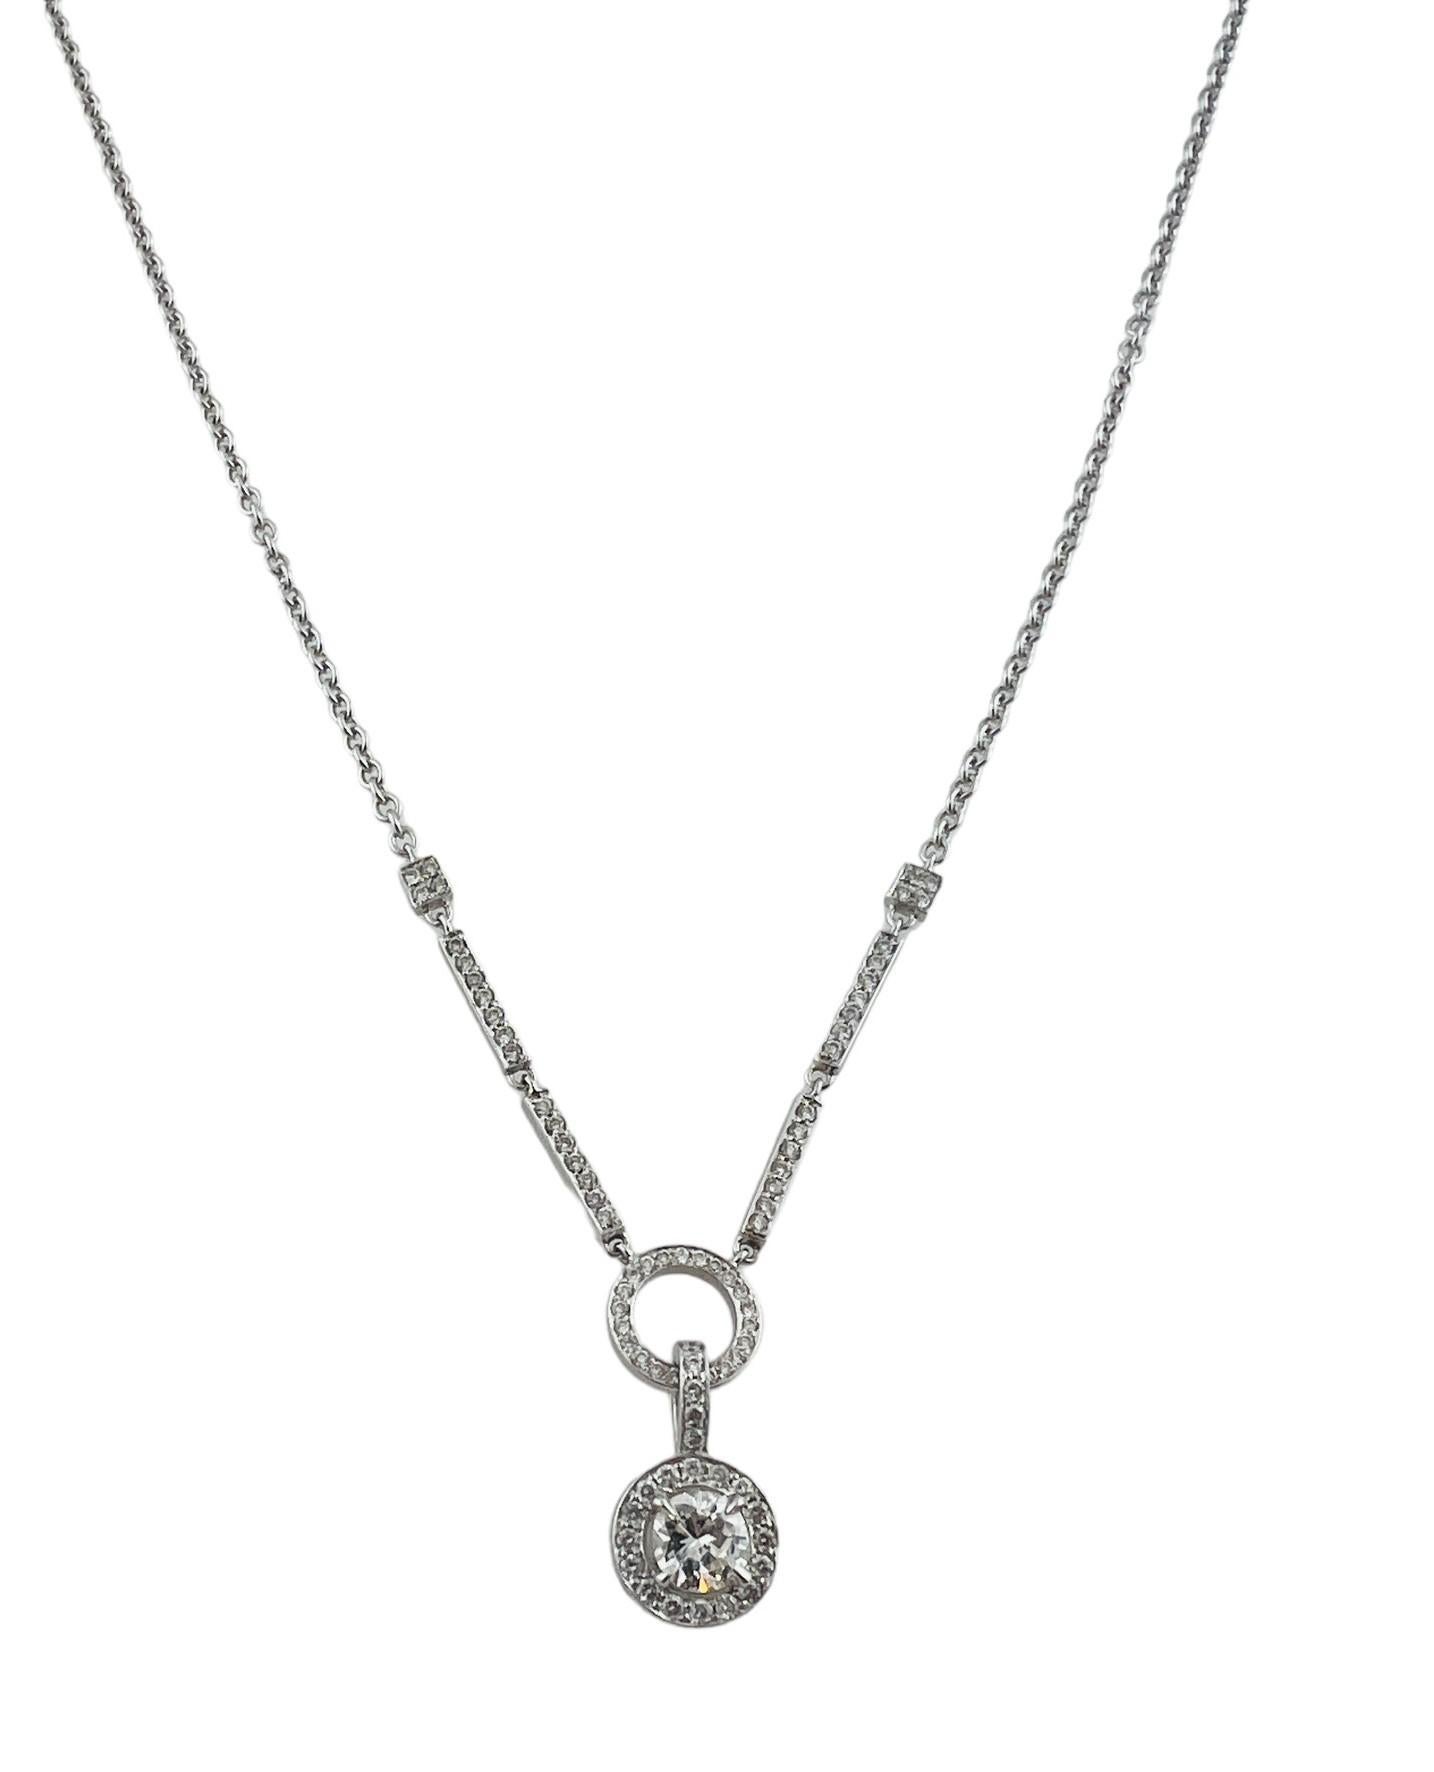 Ce collier pendentif étincelant présente 79 diamants ronds de taille brillant (centre : 0,60 ct.) sertis dans de l'or blanc 14K classique.

Poids total des diamants :   .97 ct.

Couleur du diamant :  G-H

Clarté du diamant :  SI1-I1

Taille :  17